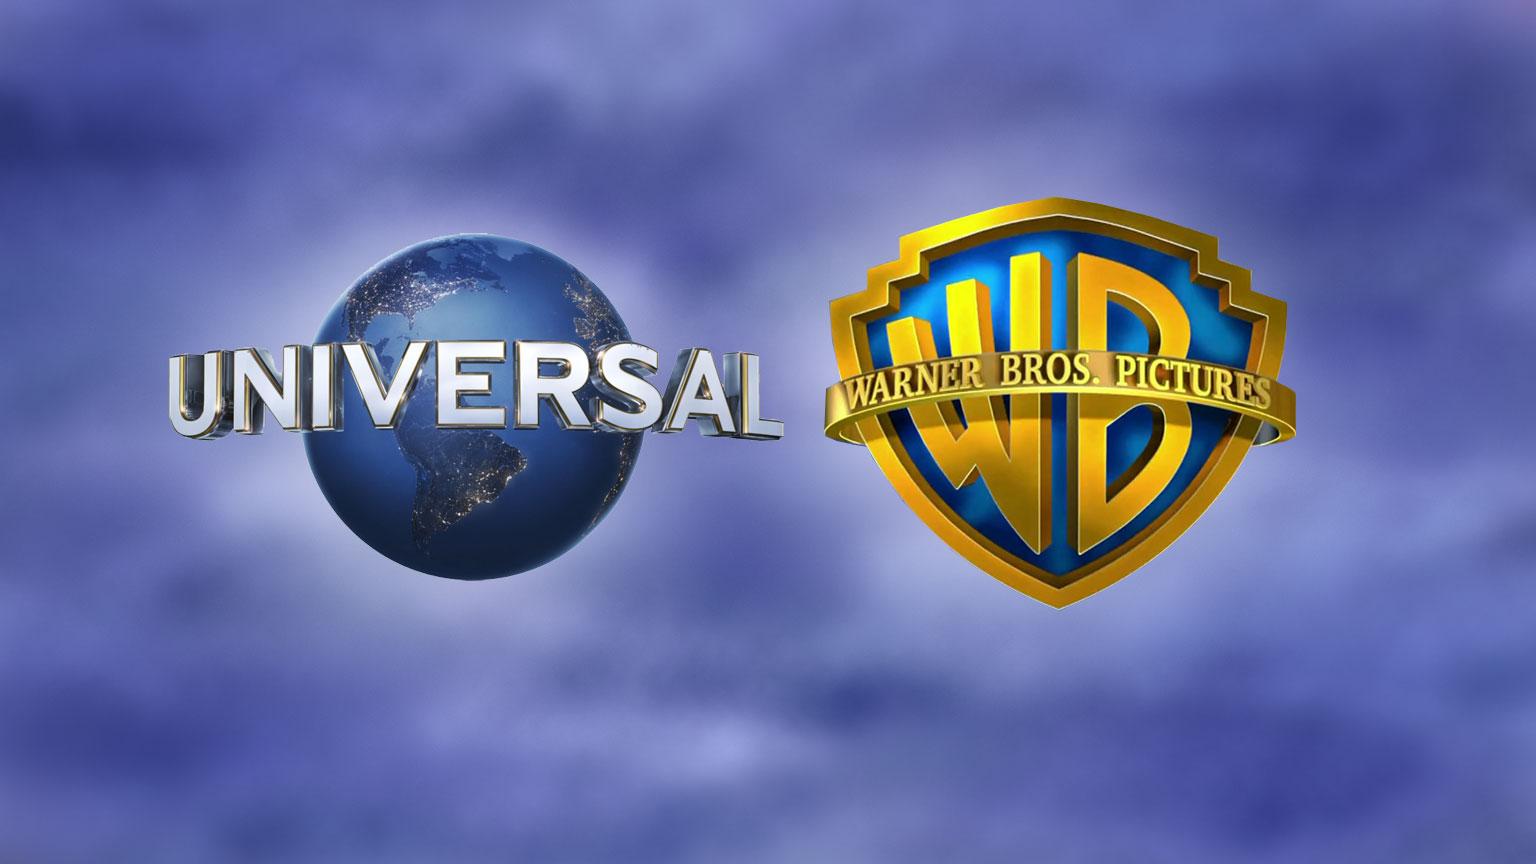 Universal Pictures Warner Bros Vertieb zusammen Filmstudios Artikelbild